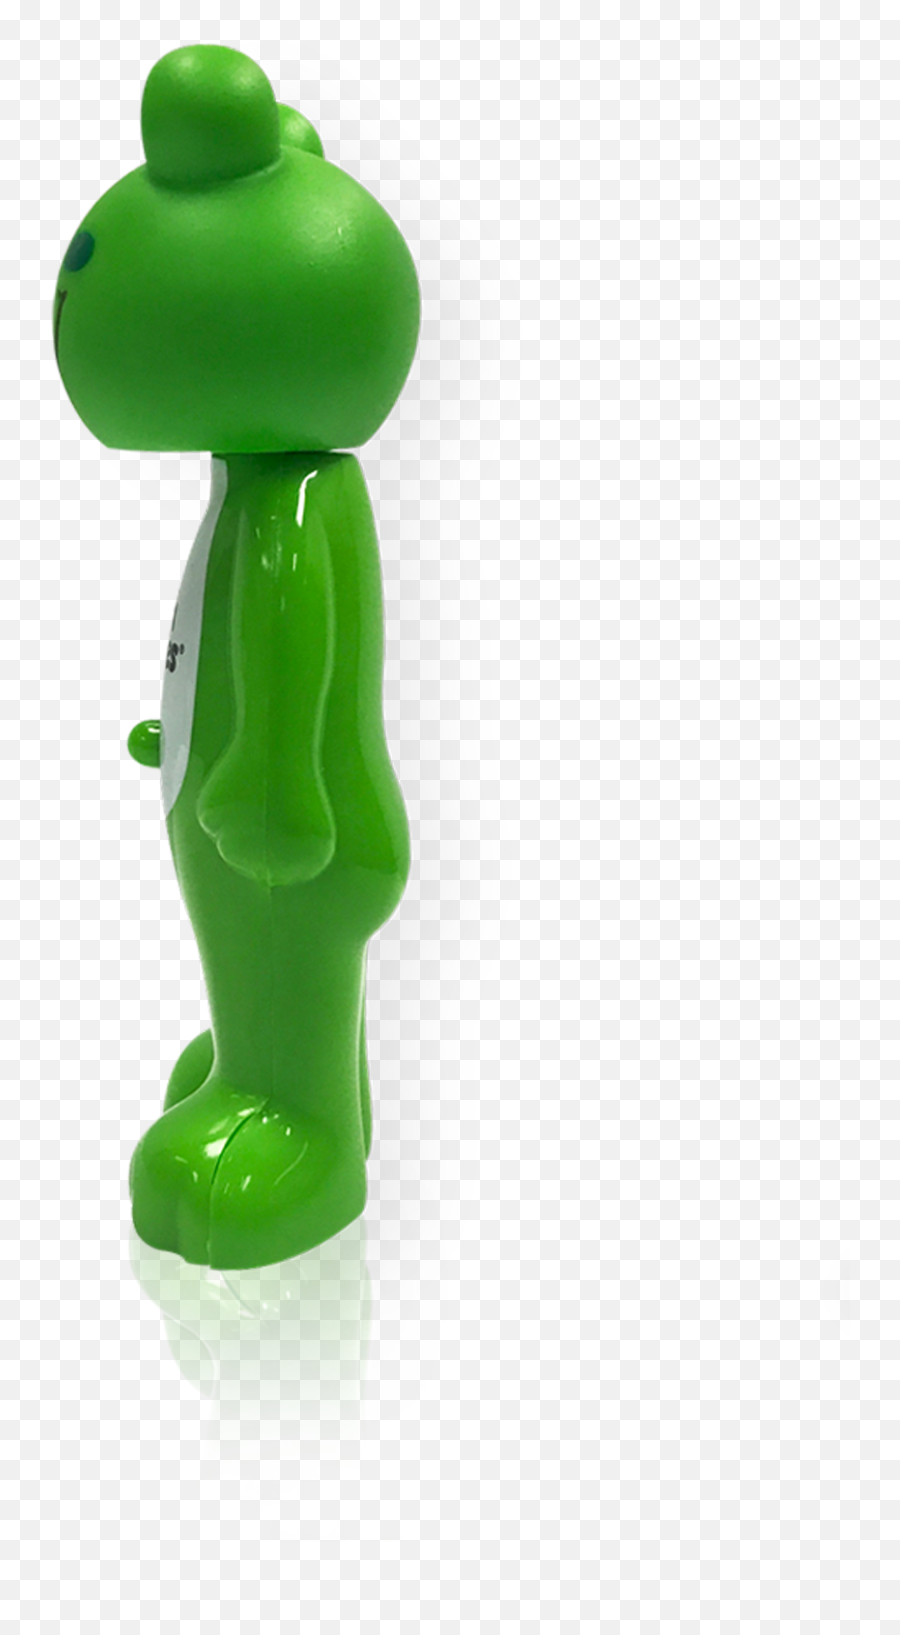 Poppinu0027 Leapin Louie Frog Toothbrush U2013 Brush Buddies Emoji,Getin Frog Emoji